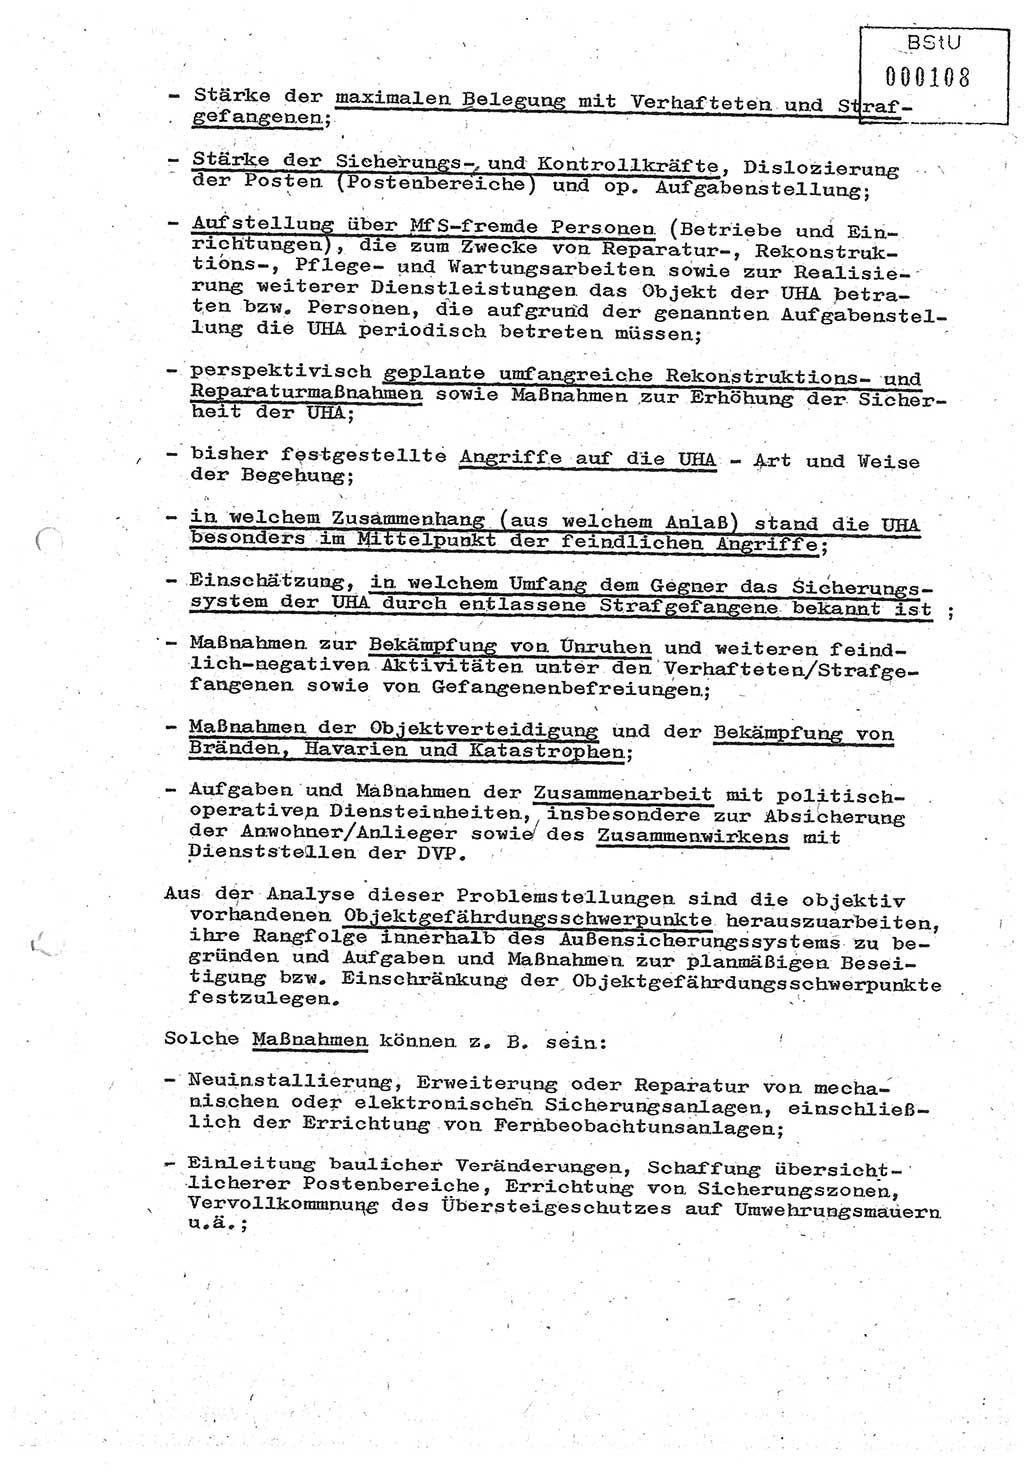 Diplomarbeit (Entwurf) Oberleutnant Peter Parke (Abt. ⅩⅣ), Ministerium für Staatssicherheit (MfS) [Deutsche Demokratische Republik (DDR)], Juristische Hochschule (JHS), Geheime Verschlußsache (GVS) o001-98/86, Potsdam 1986, Seite 108 (Dipl.-Arb. MfS DDR JHS GVS o001-98/86 1986, S. 108)